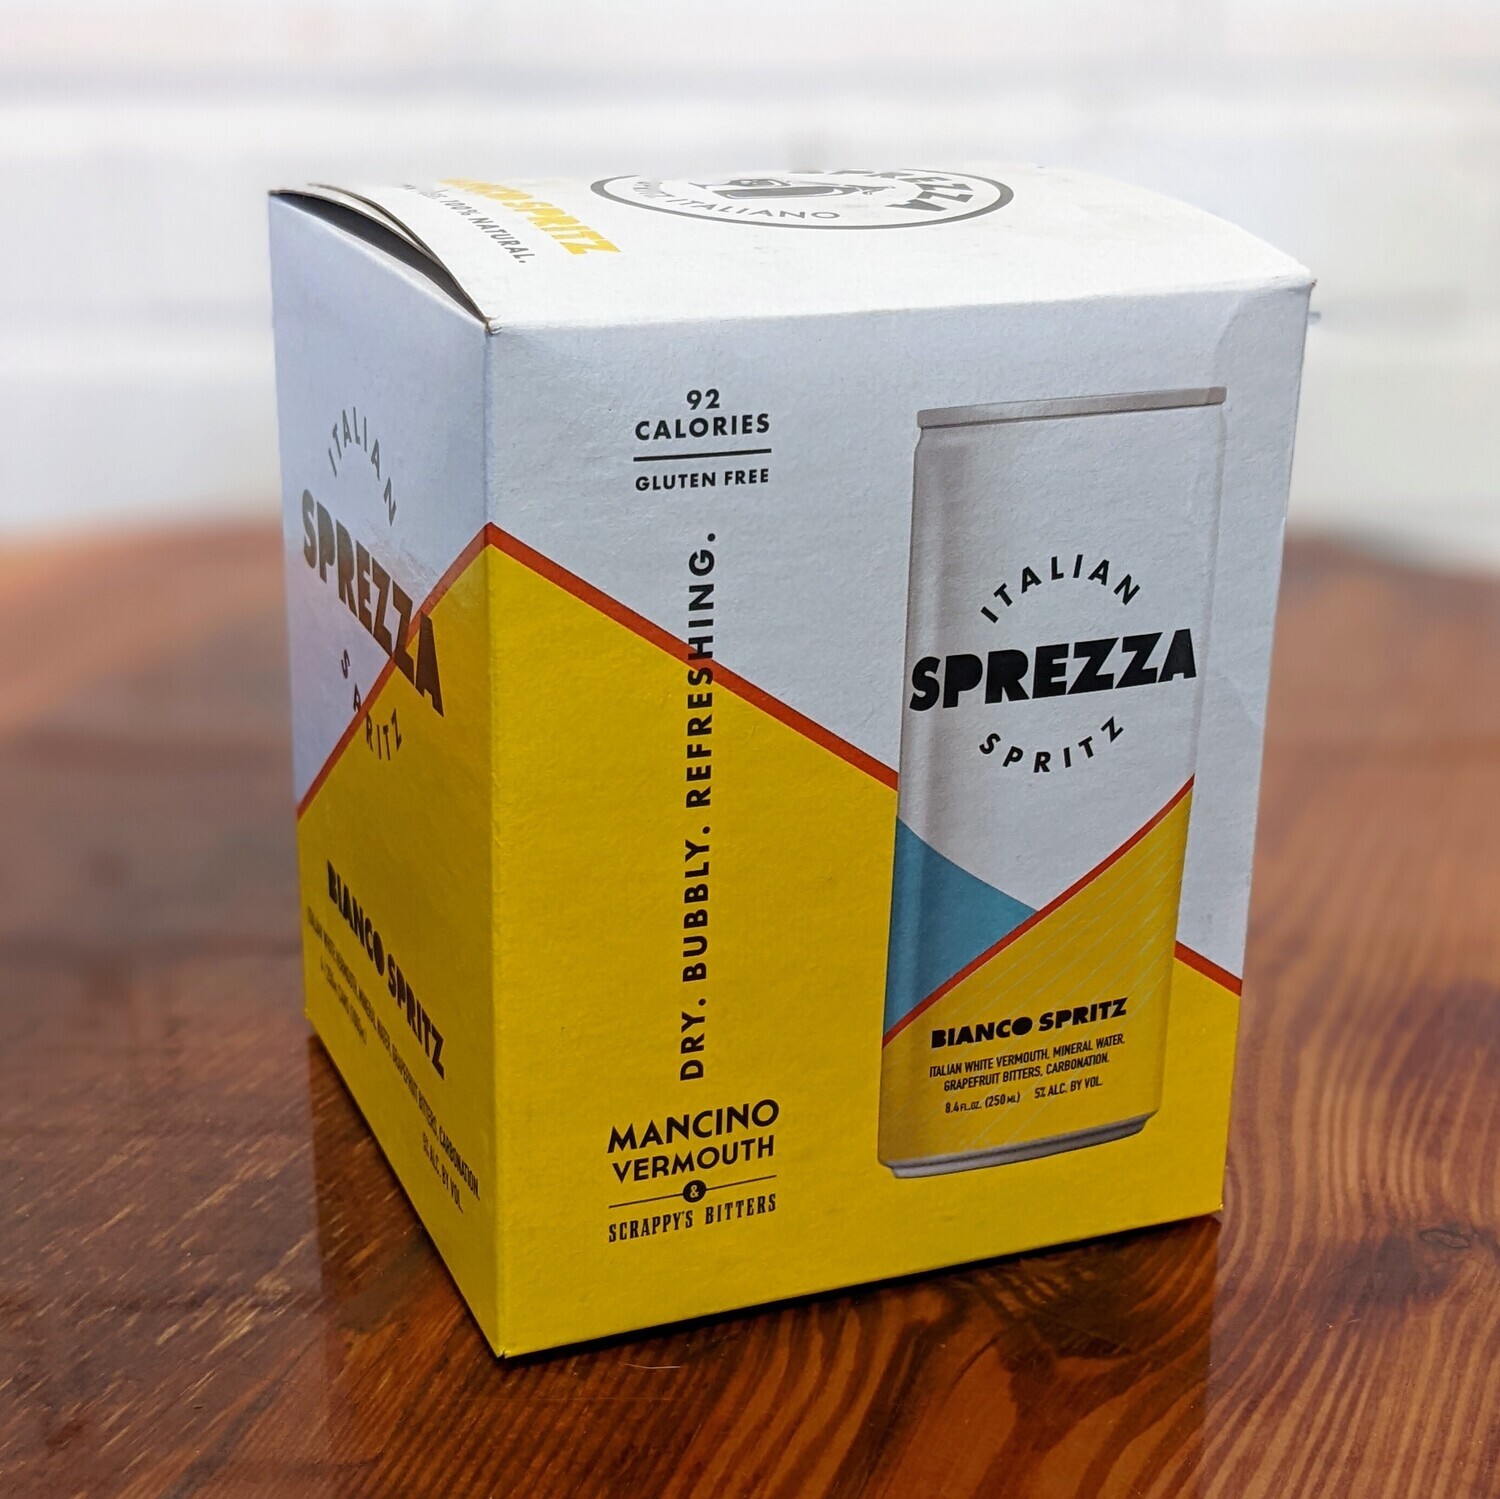 Sprezza Bianco Spritz (4pk)